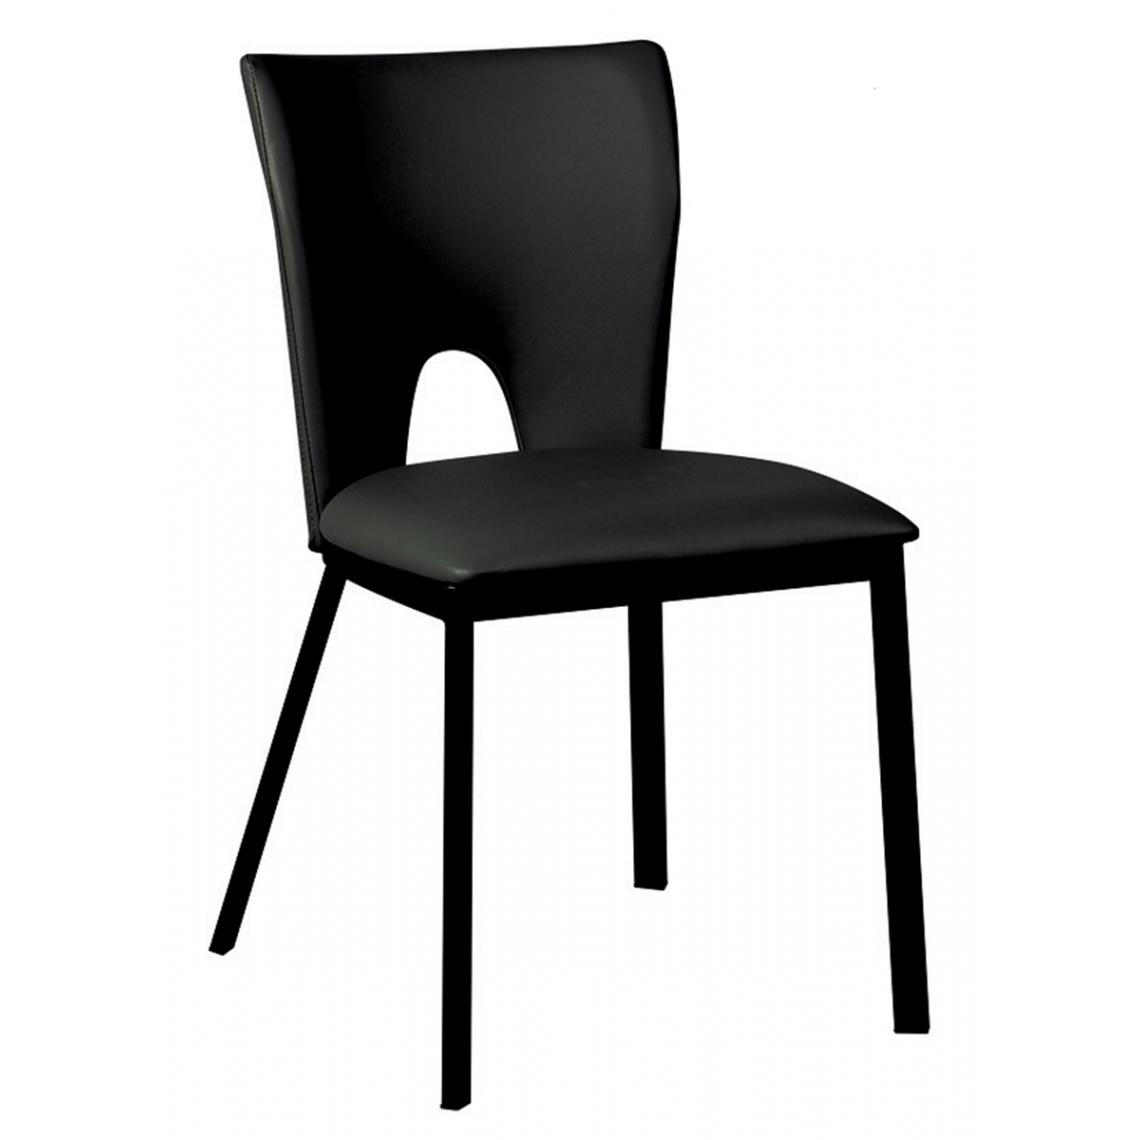 Pegane - Lot de 2 chaises coloris noire en PU / acier - Longueur 45 x Profondeur 50 x Hauteur 81 x Hauteur Assise : 47 cm - Chaises